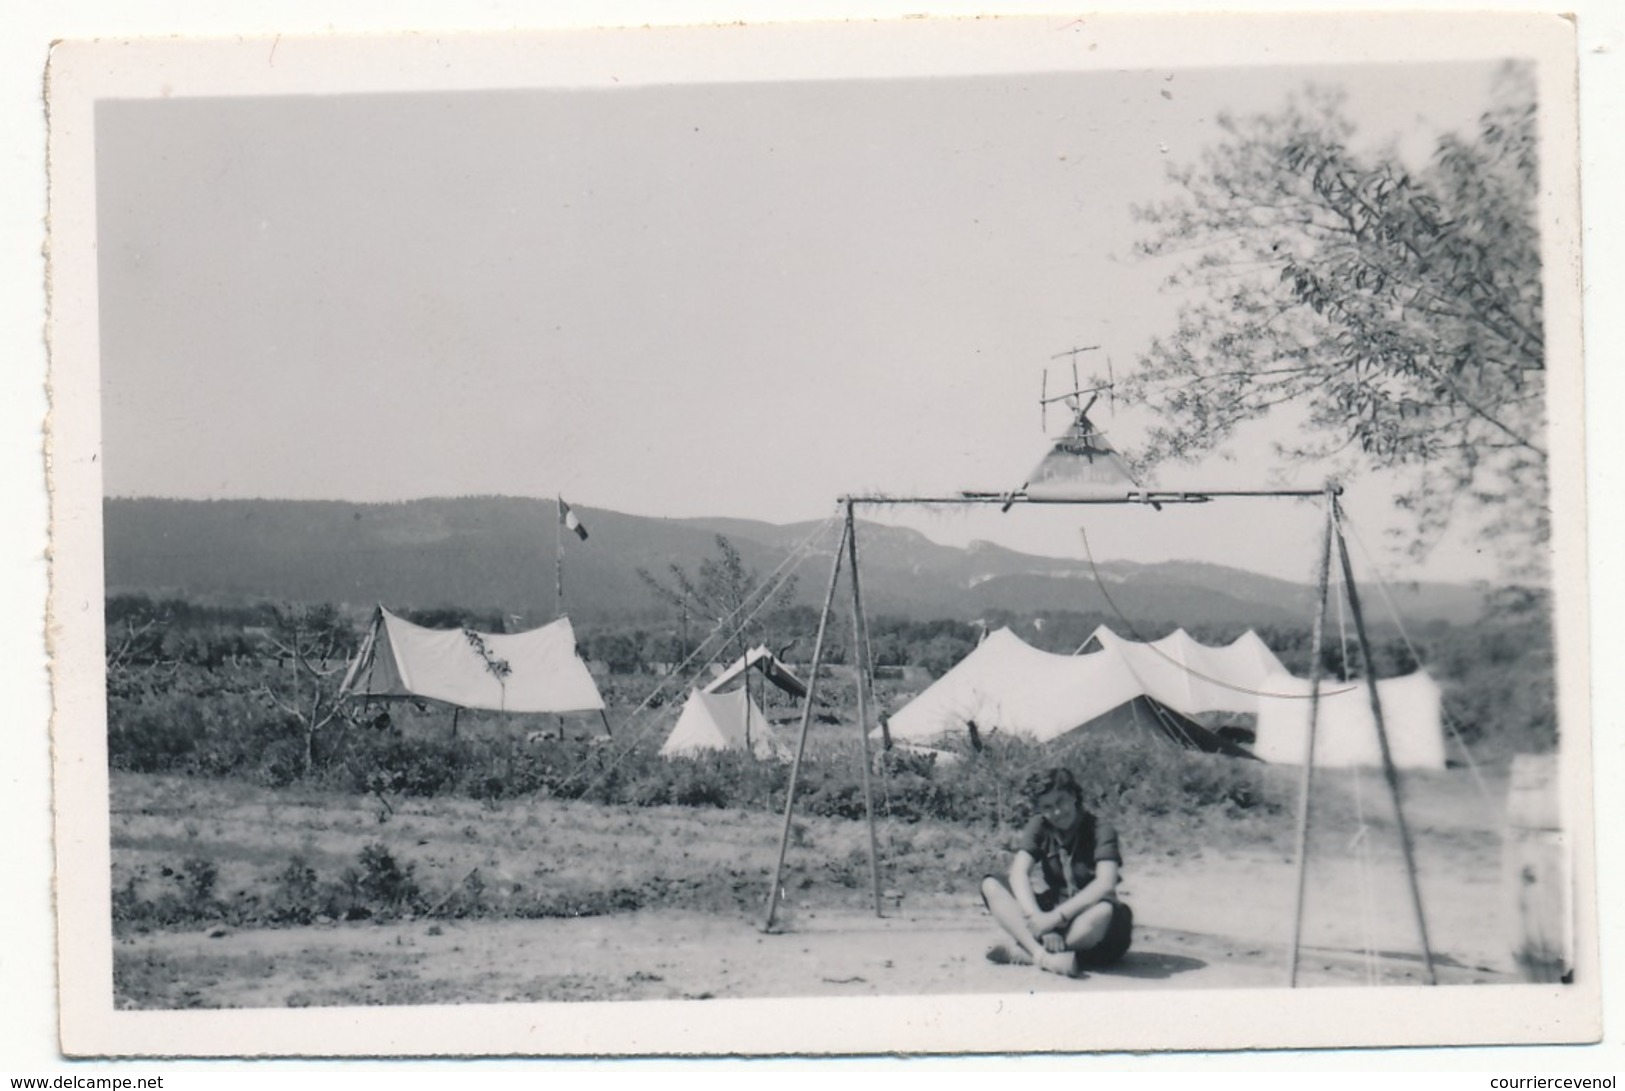 SCOUTISME - 12 petites photos - Guides de France - Camp de Champagne s/Seine - 1946